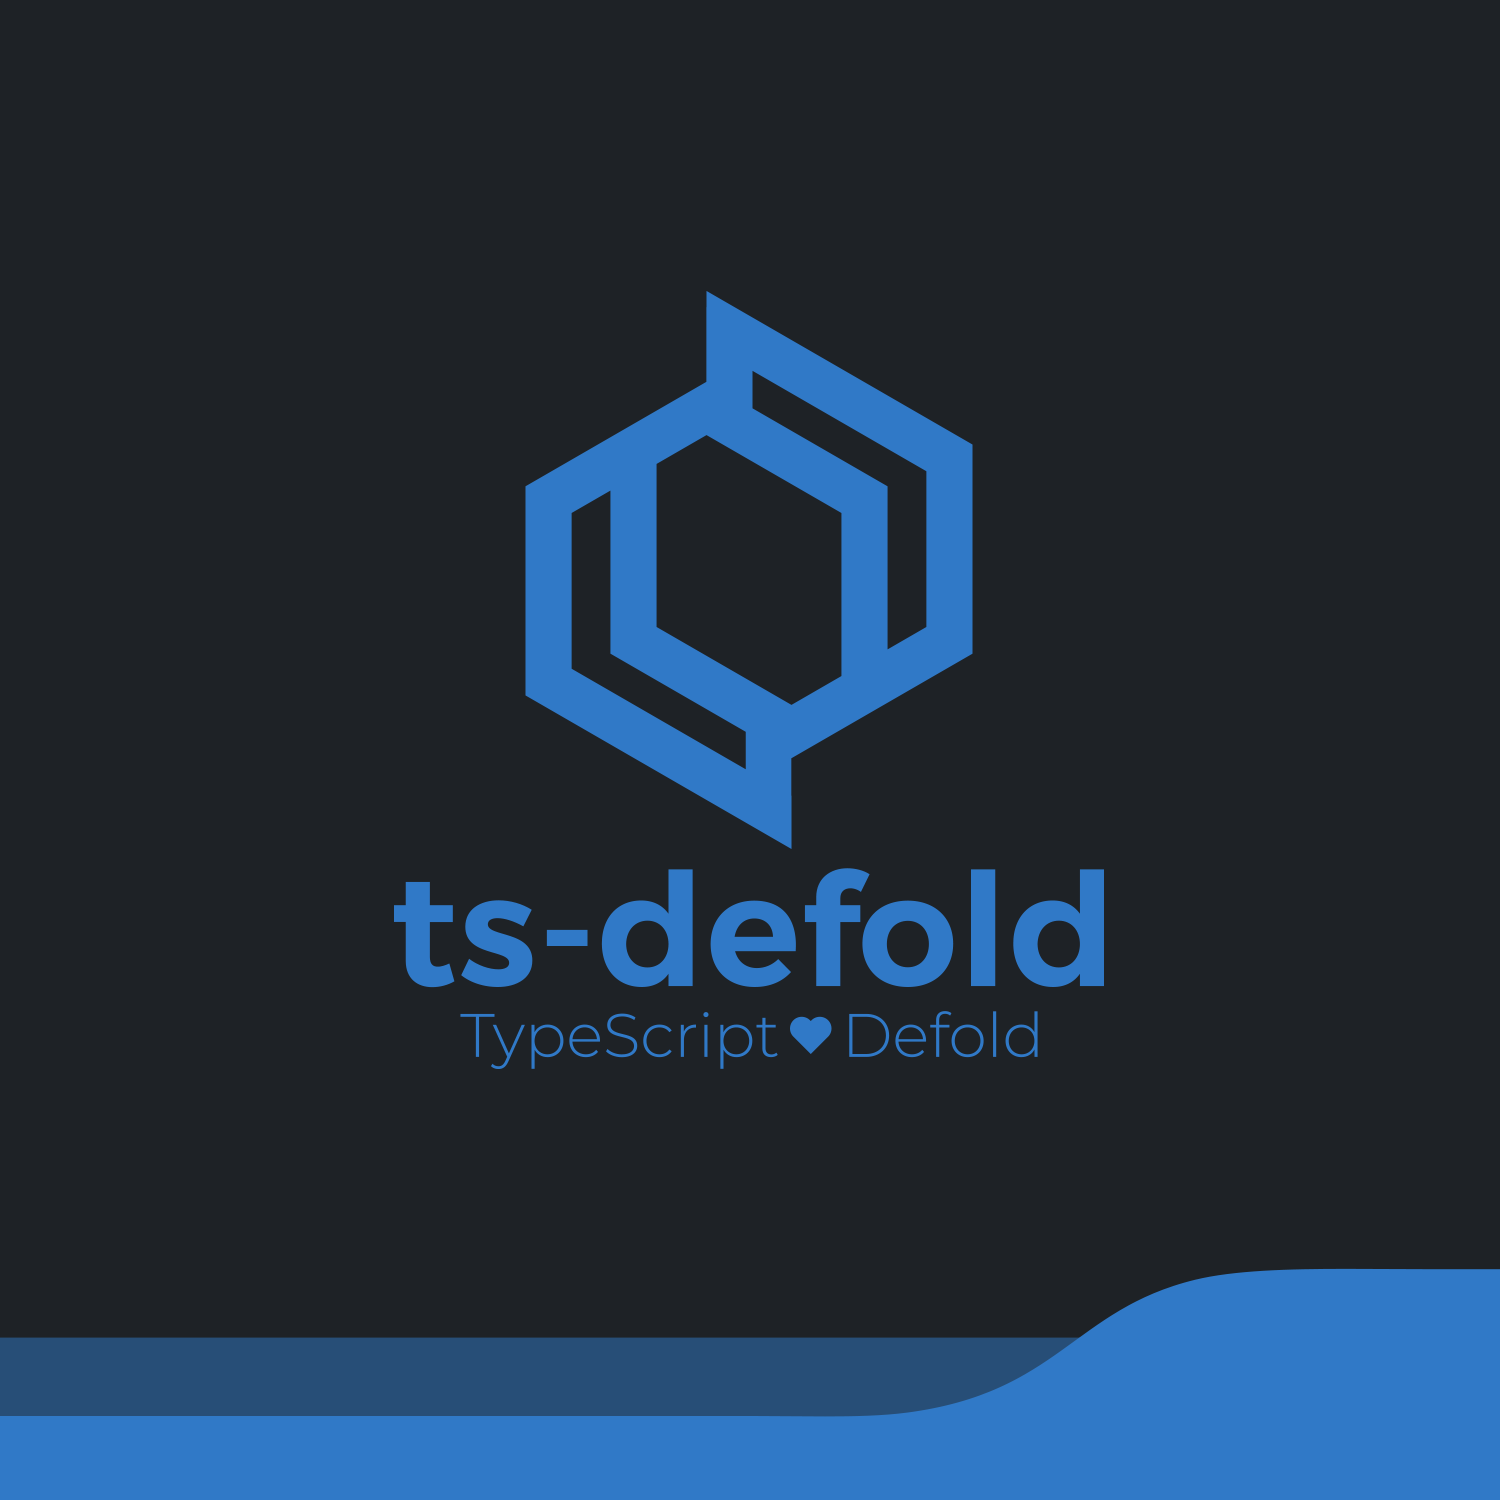 Defold project settings